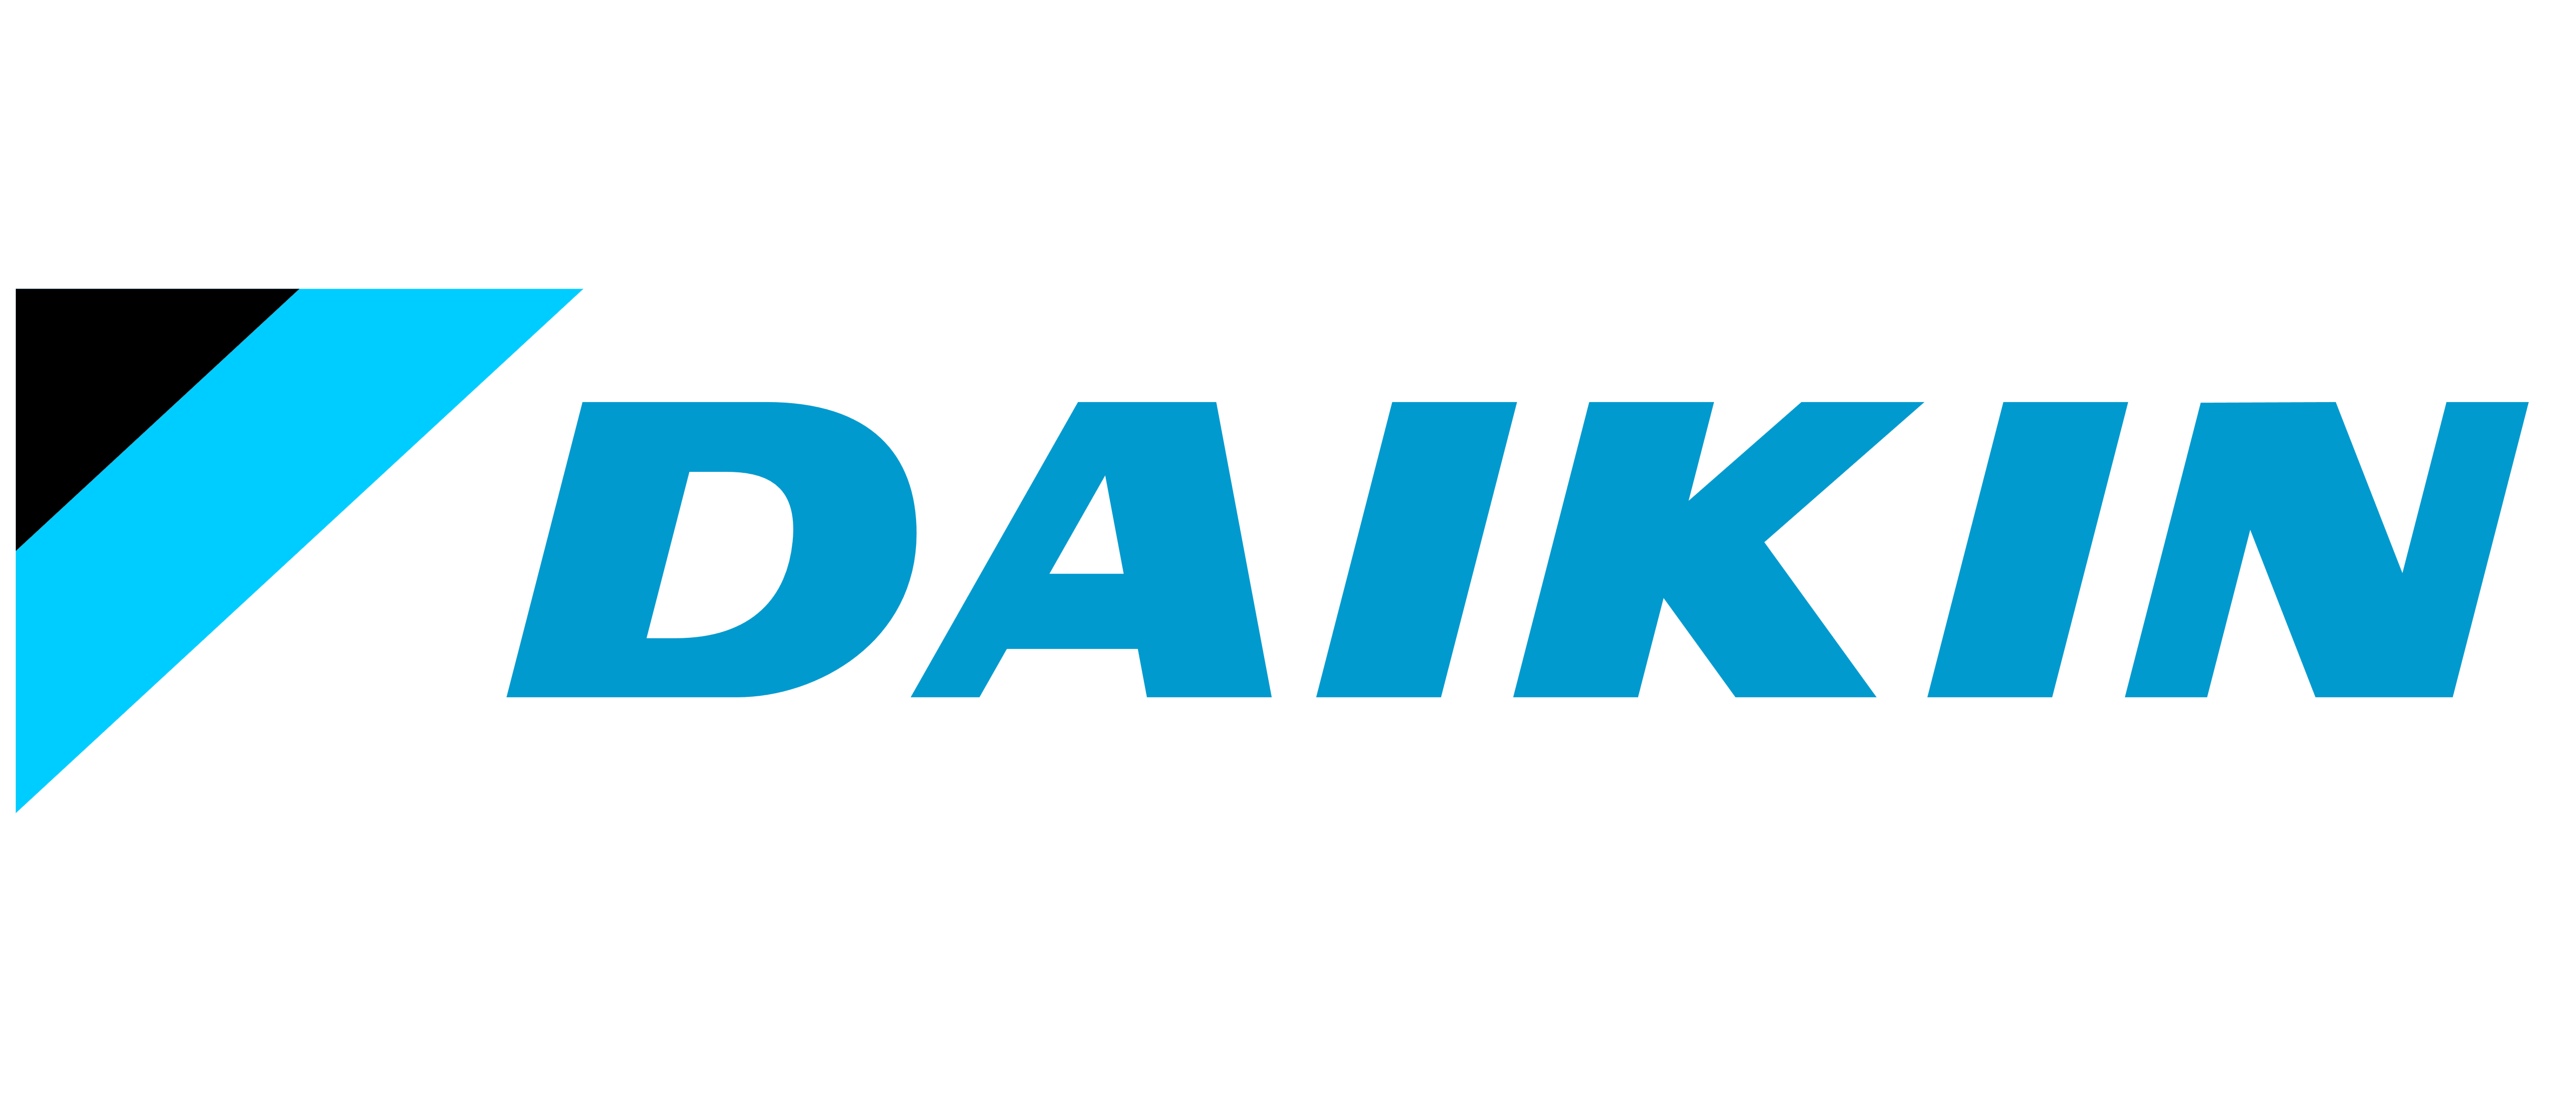 Daikin_logo